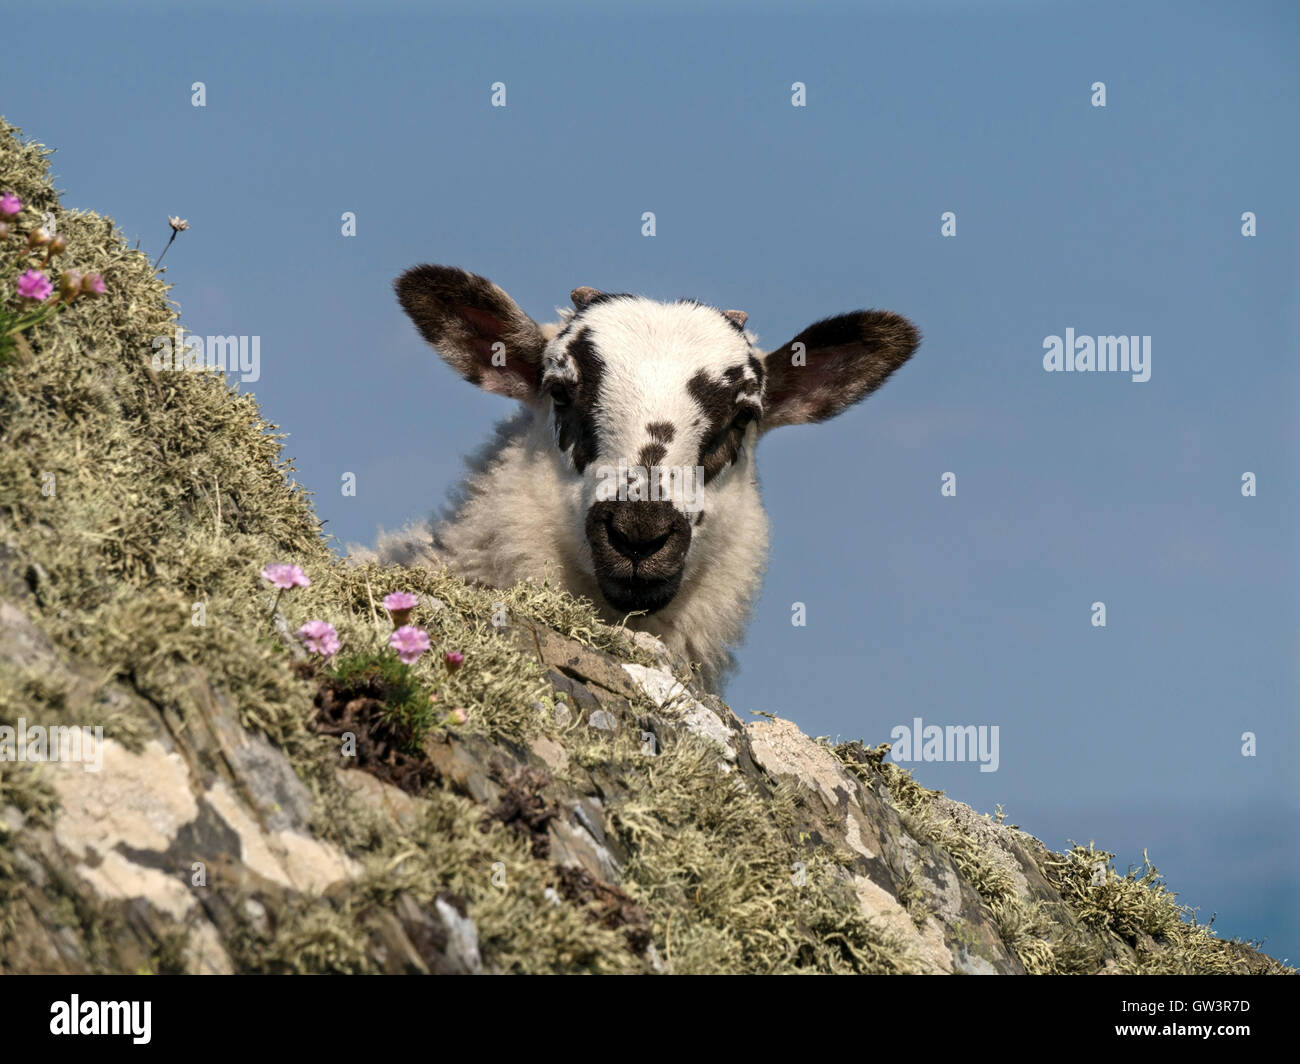 Jeune agneau avec de grandes oreilles peeping autour de rock, à l'île de Colonsay, Ecosse, Royaume-Uni. Banque D'Images